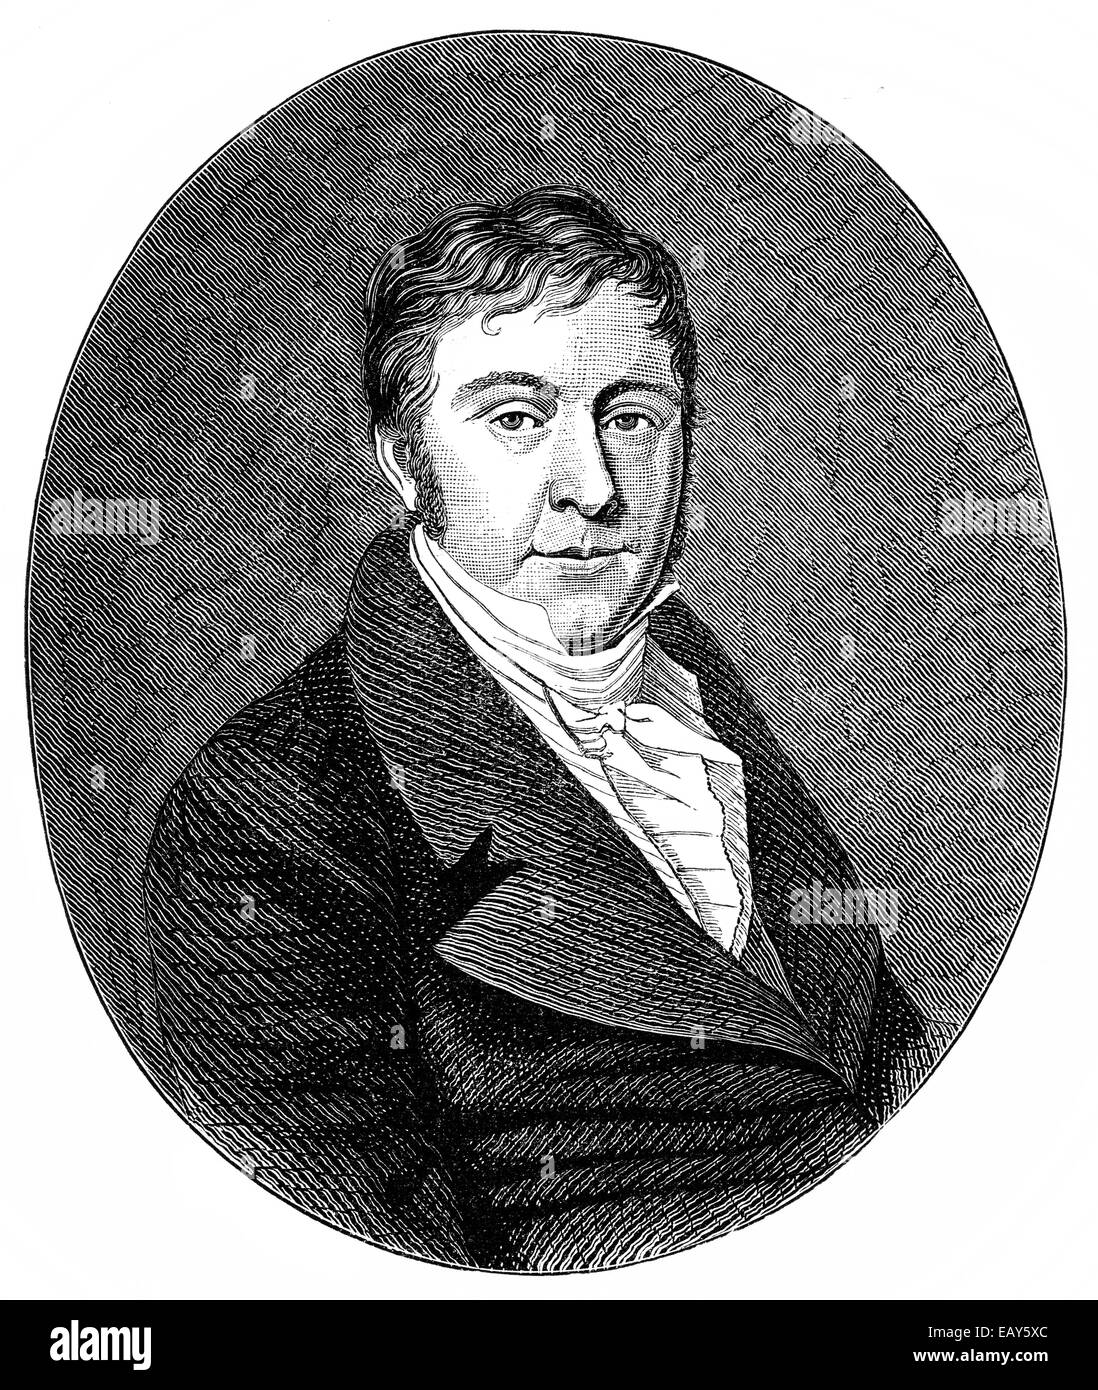 Johann Nepomuk Hummel, 1778-1837, ein österreichischer Komponist und Pianist, Porträt von Johann Nepomuk Hummel, 1778-1837, öste Stockfotografie - Alamy